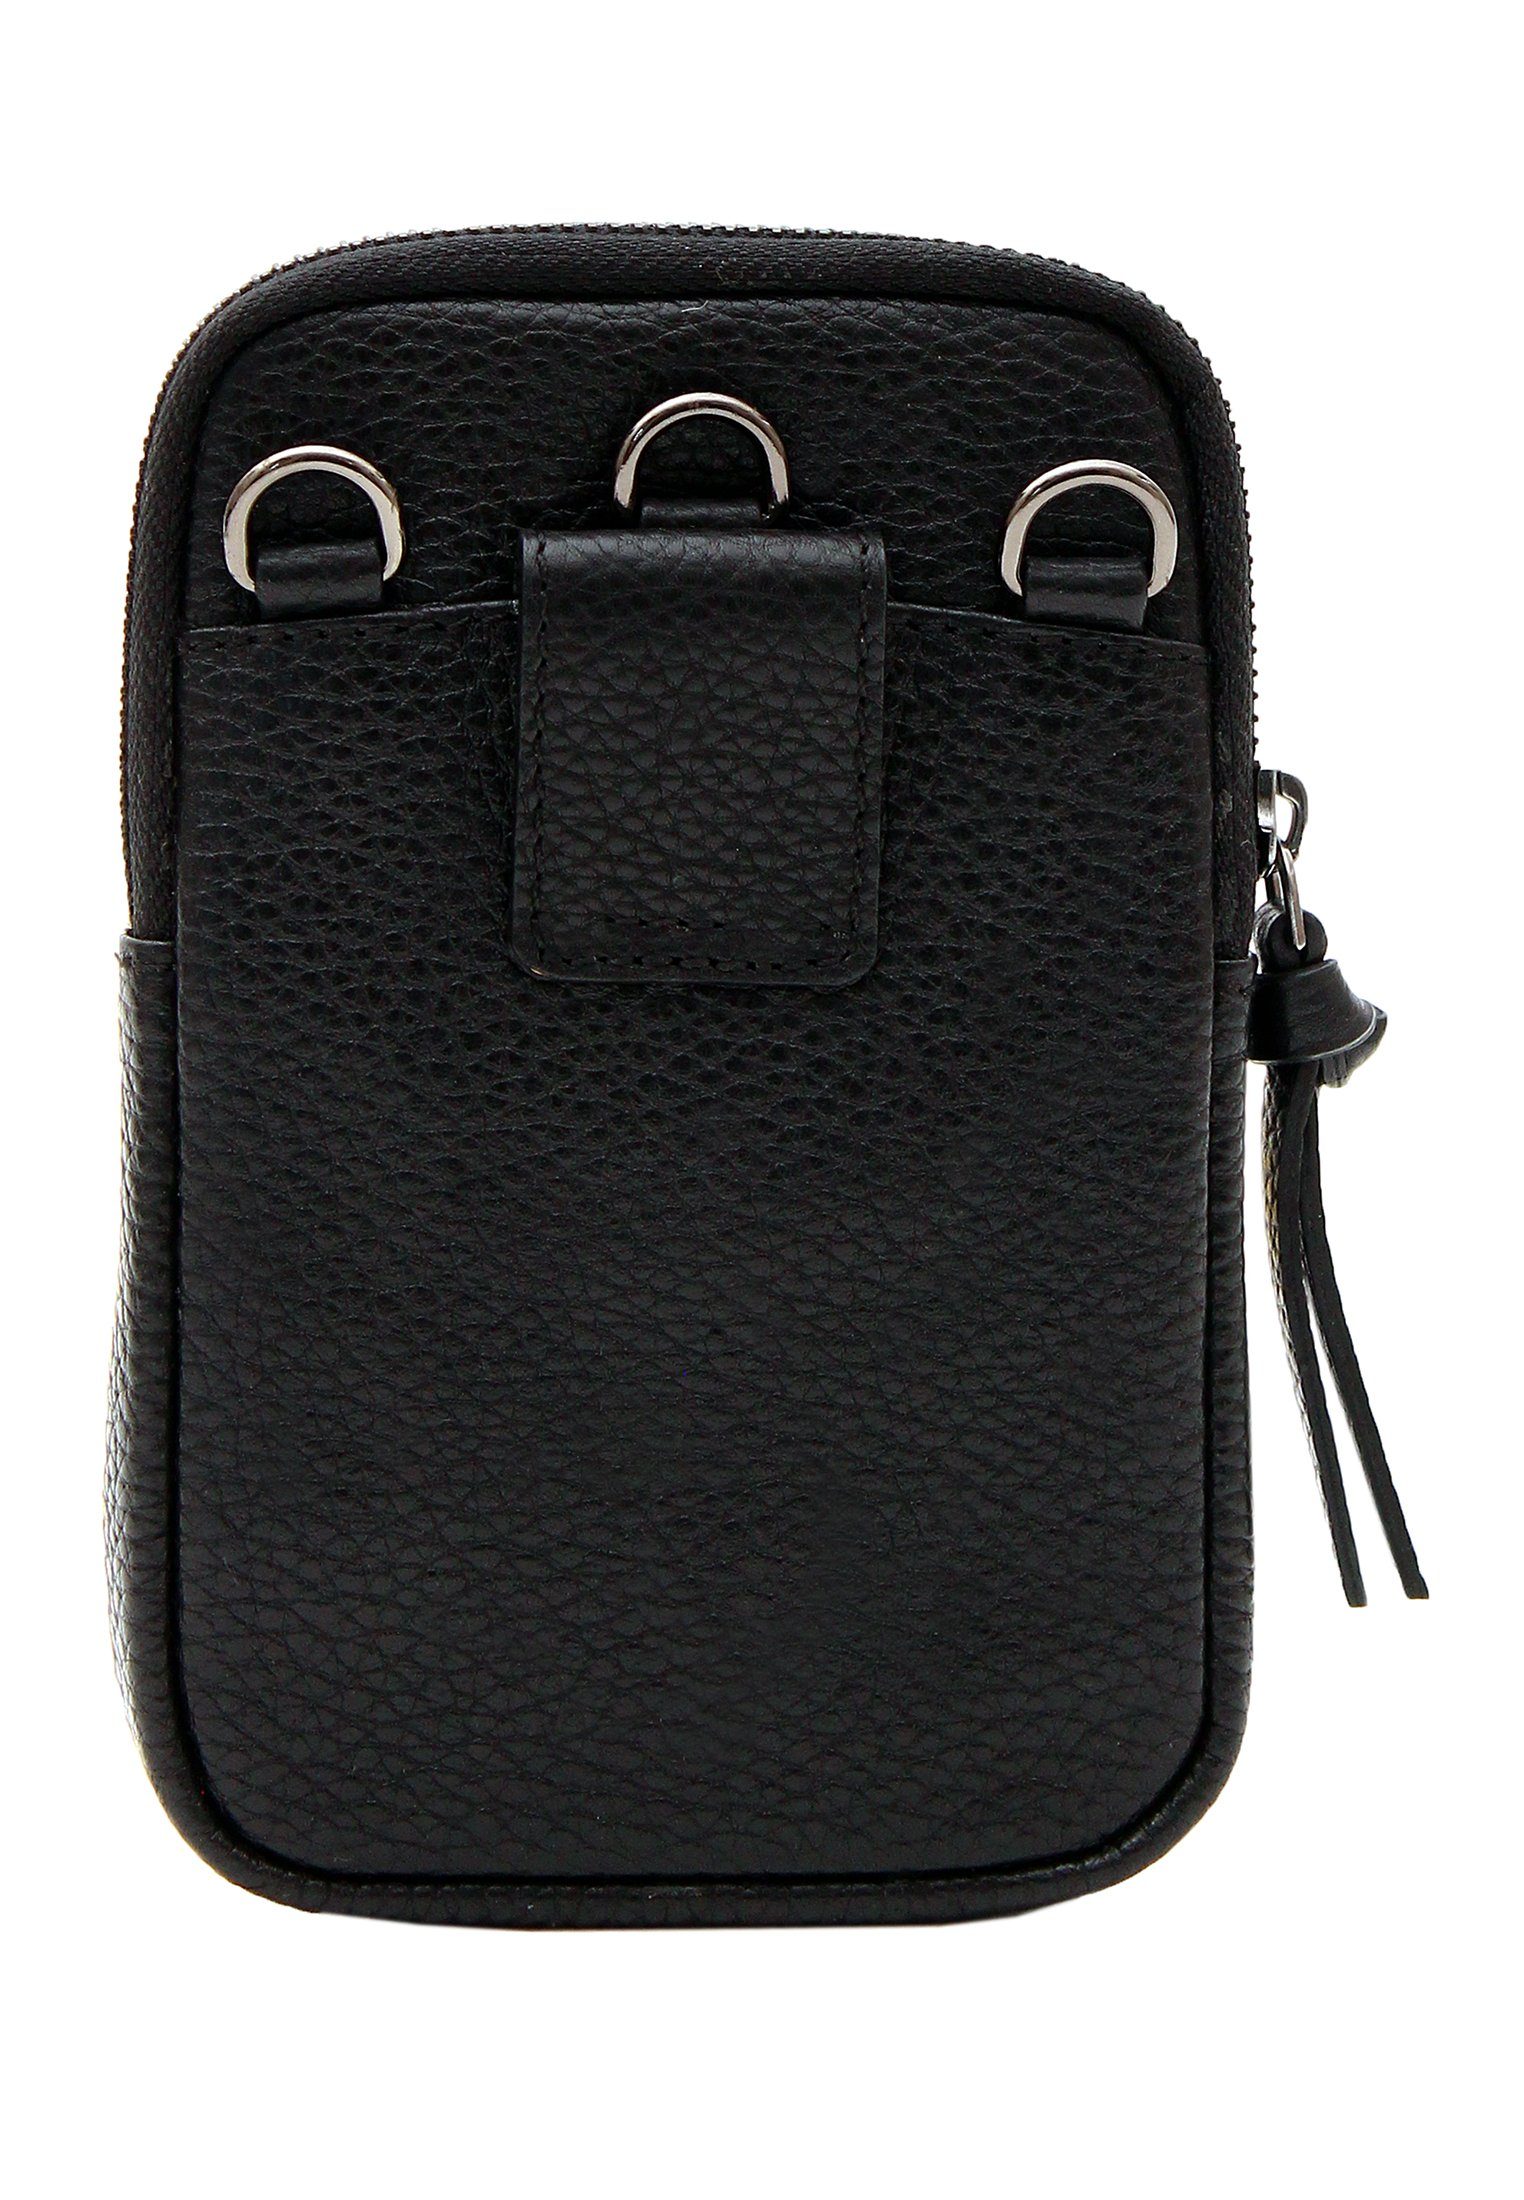 Braun Büffel Smartphonetasche NOVARA längenverstellbarem mit Pouch schwarz, Umhängegurt Phone